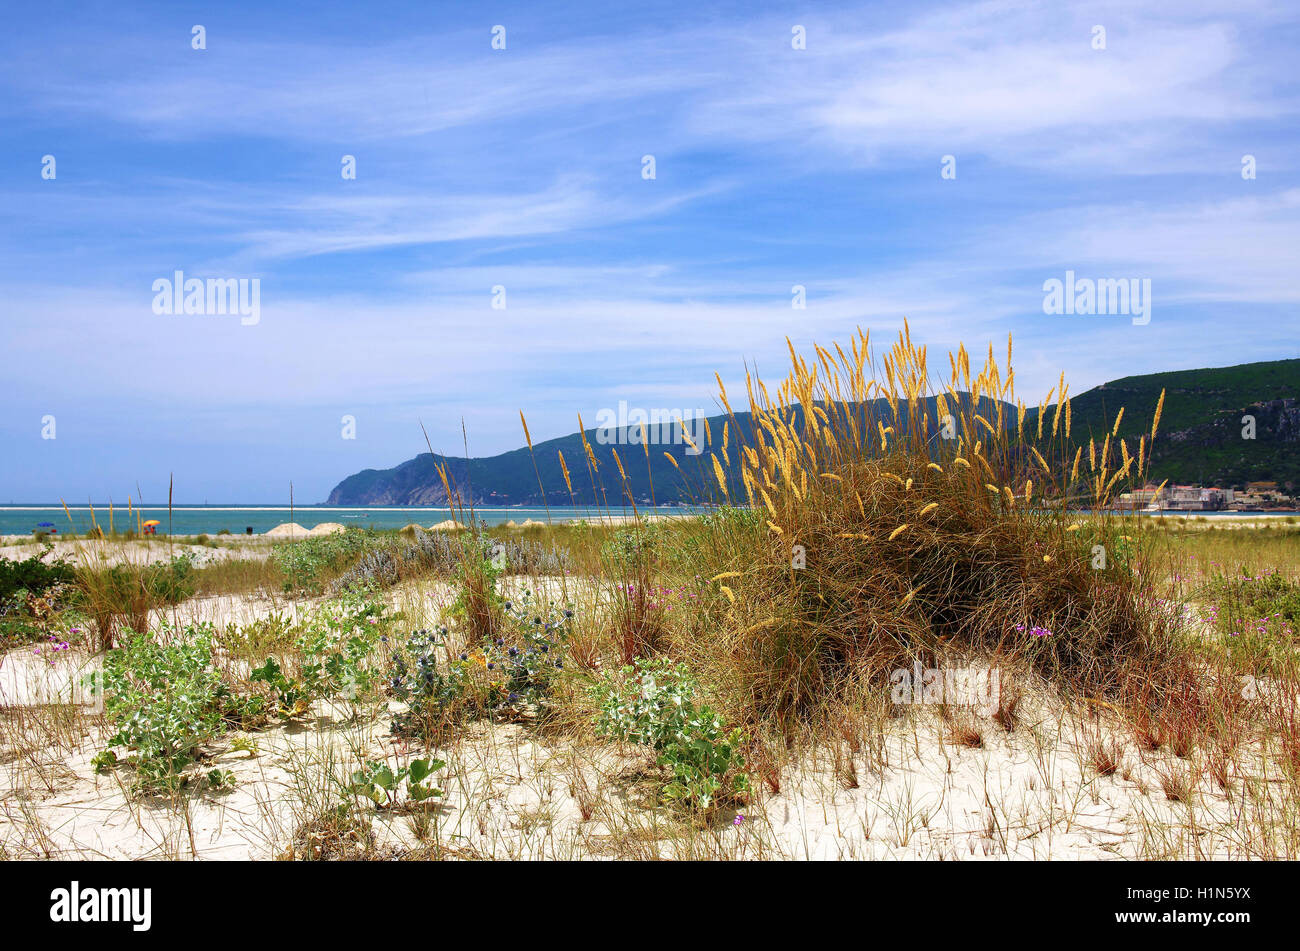 Paesaggio di spiaggia con dune e vegetazione selvaggia e il mare in background Foto Stock